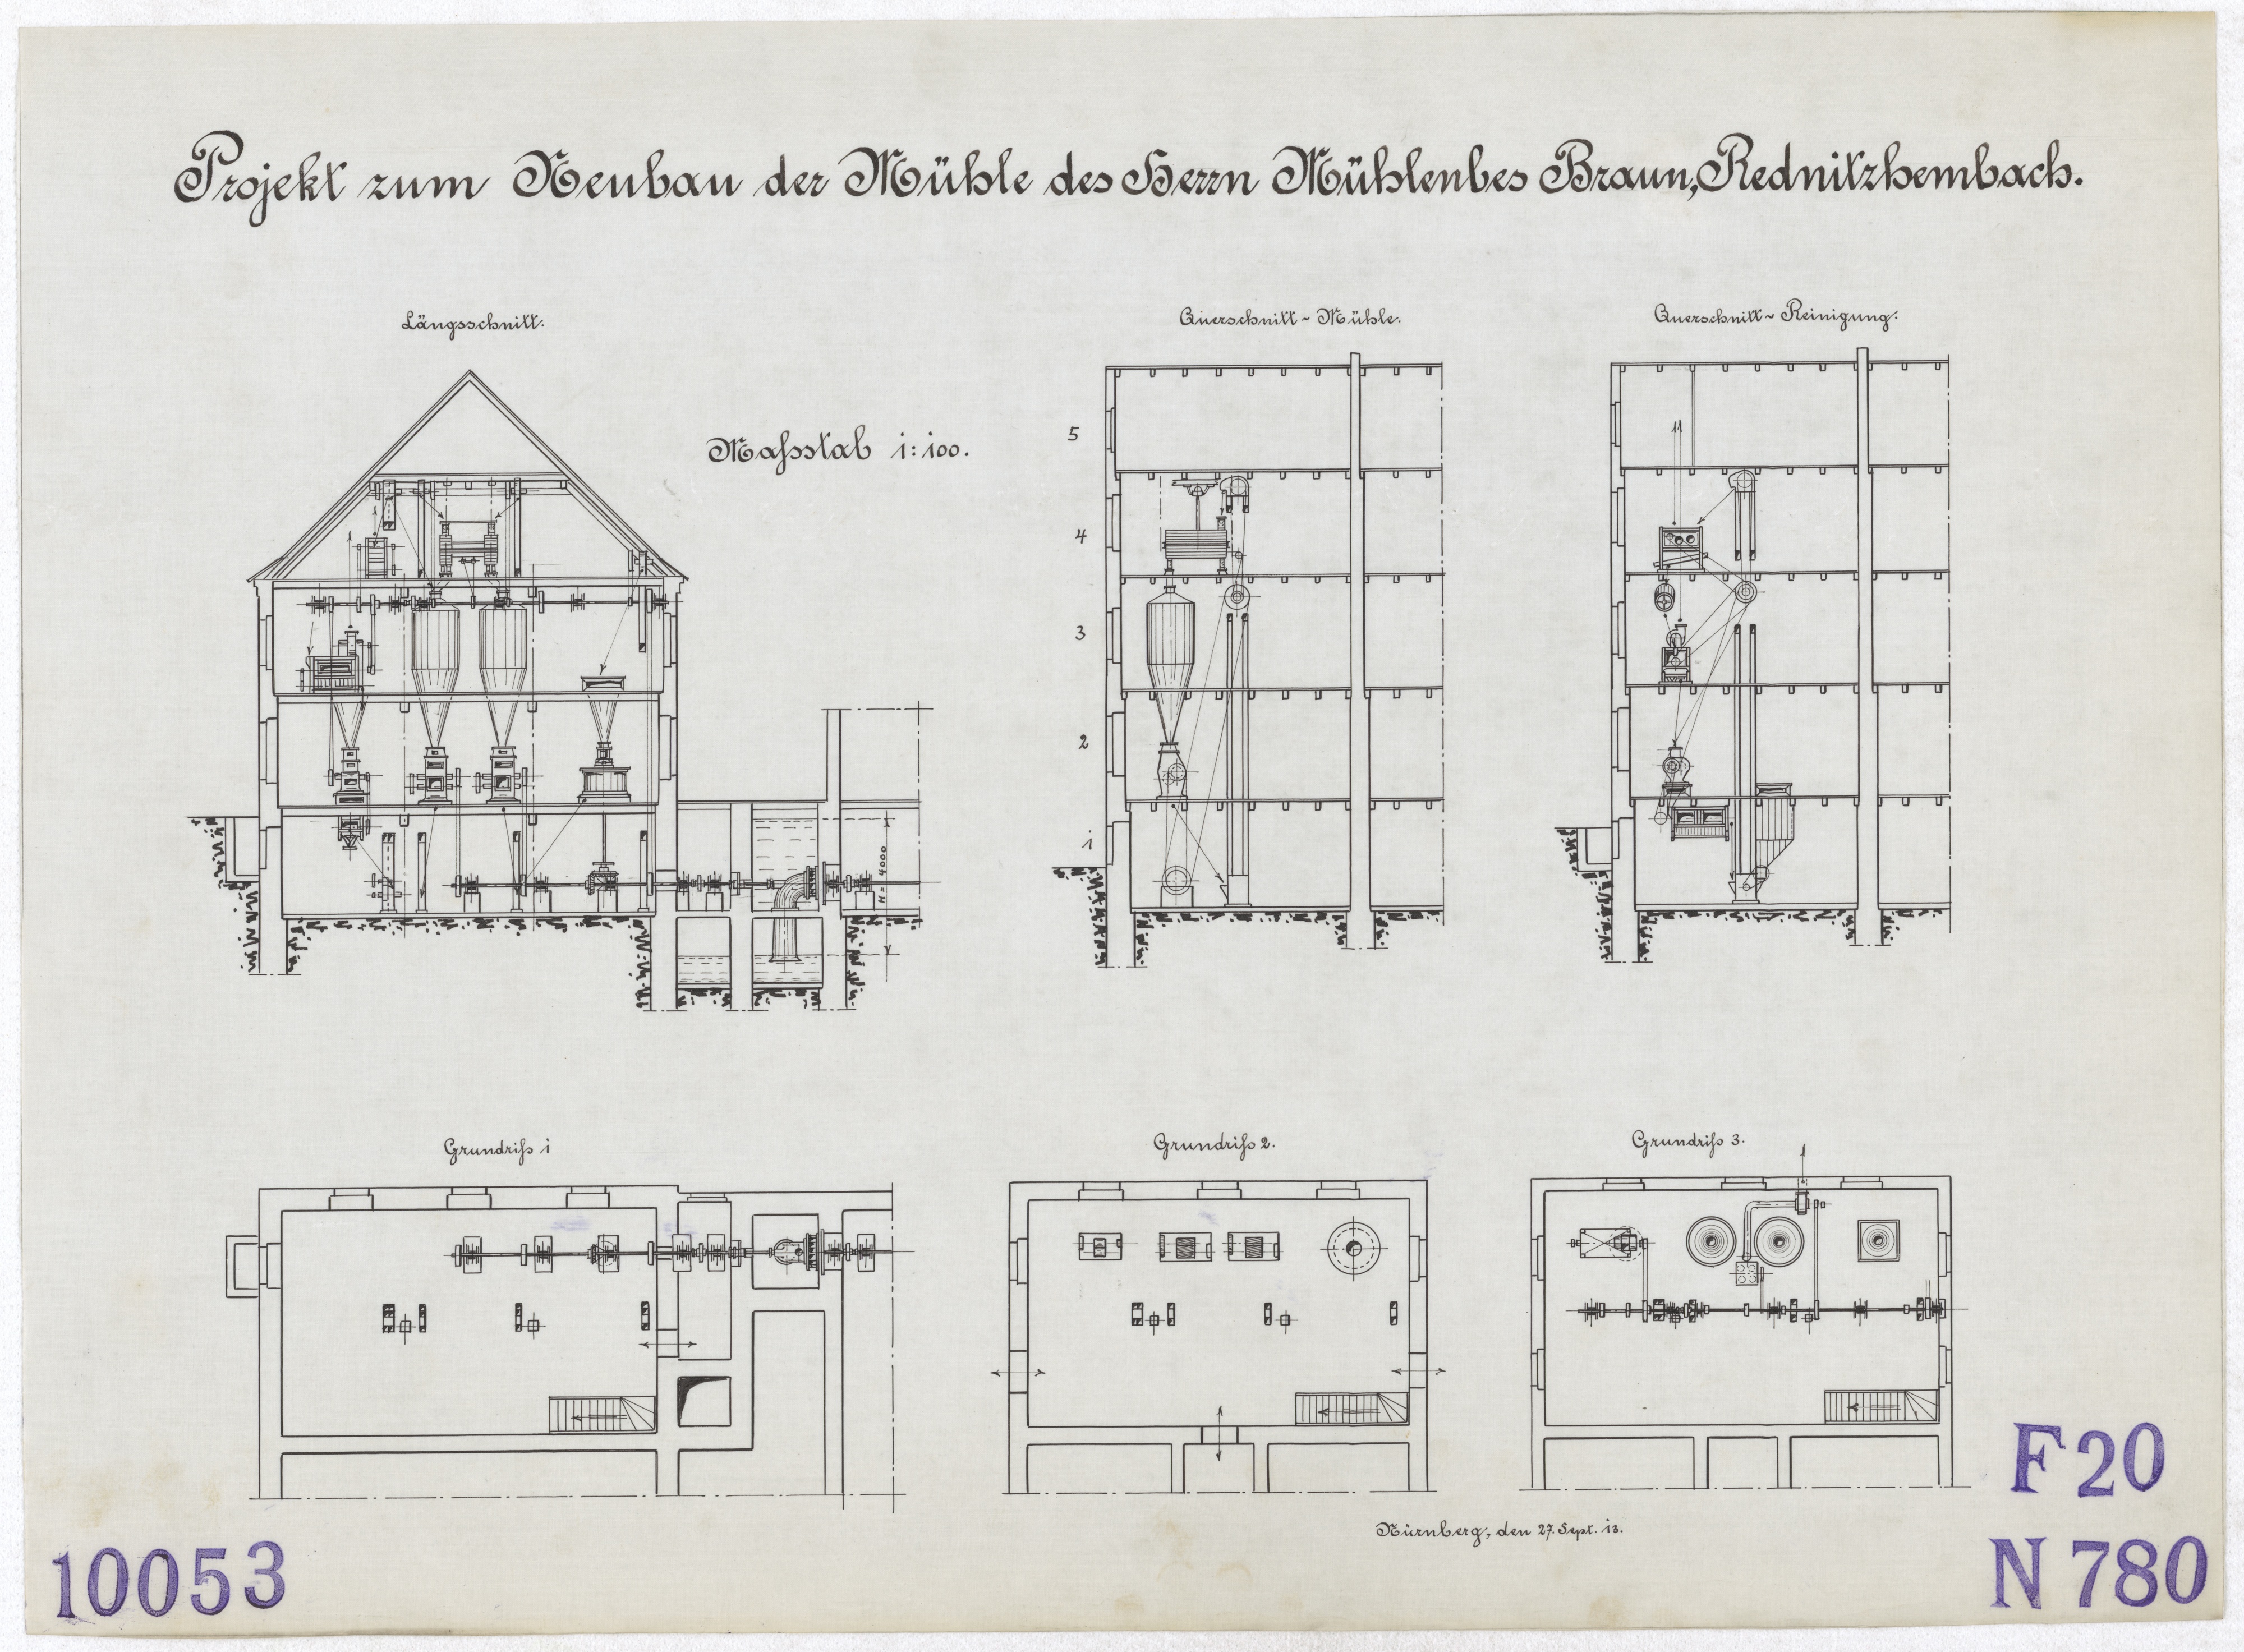 Technische Zeichnung : Projekt zum Neubau der Mühle des Herrn Mühlenbesitzer Braun, Rednitzhembach (Stiftung Deutsches Technikmuseum Berlin CC BY-SA)